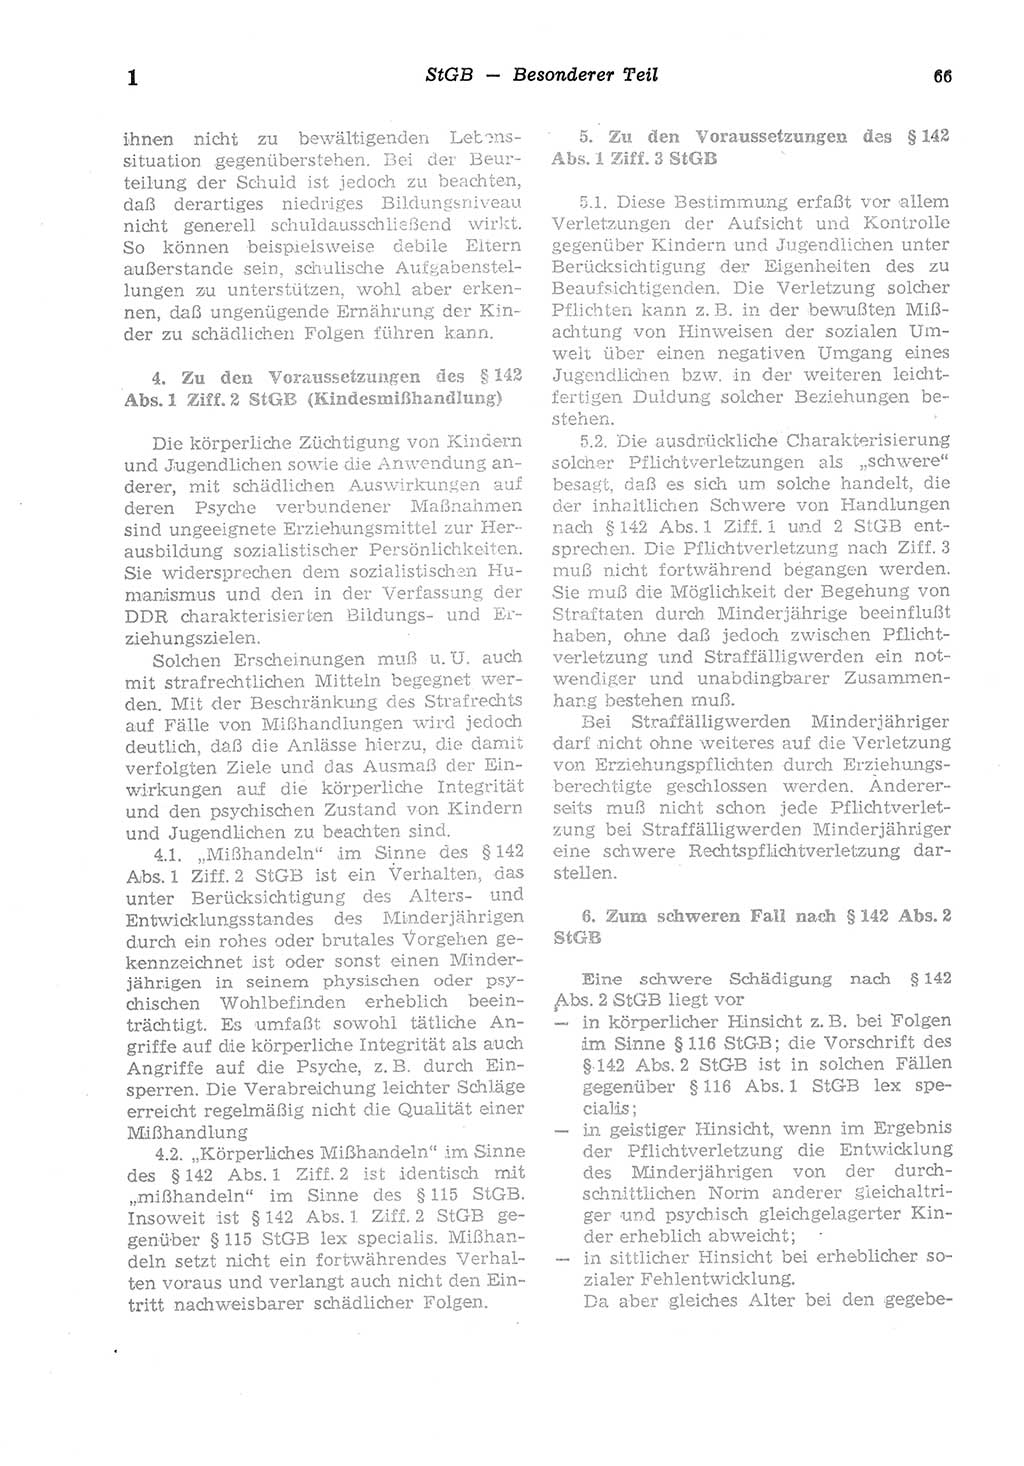 Strafgesetzbuch (StGB) der Deutschen Demokratischen Republik (DDR) und angrenzende Gesetze und Bestimmungen 1975, Seite 66 (StGB DDR Ges. Best. 1975, S. 66)